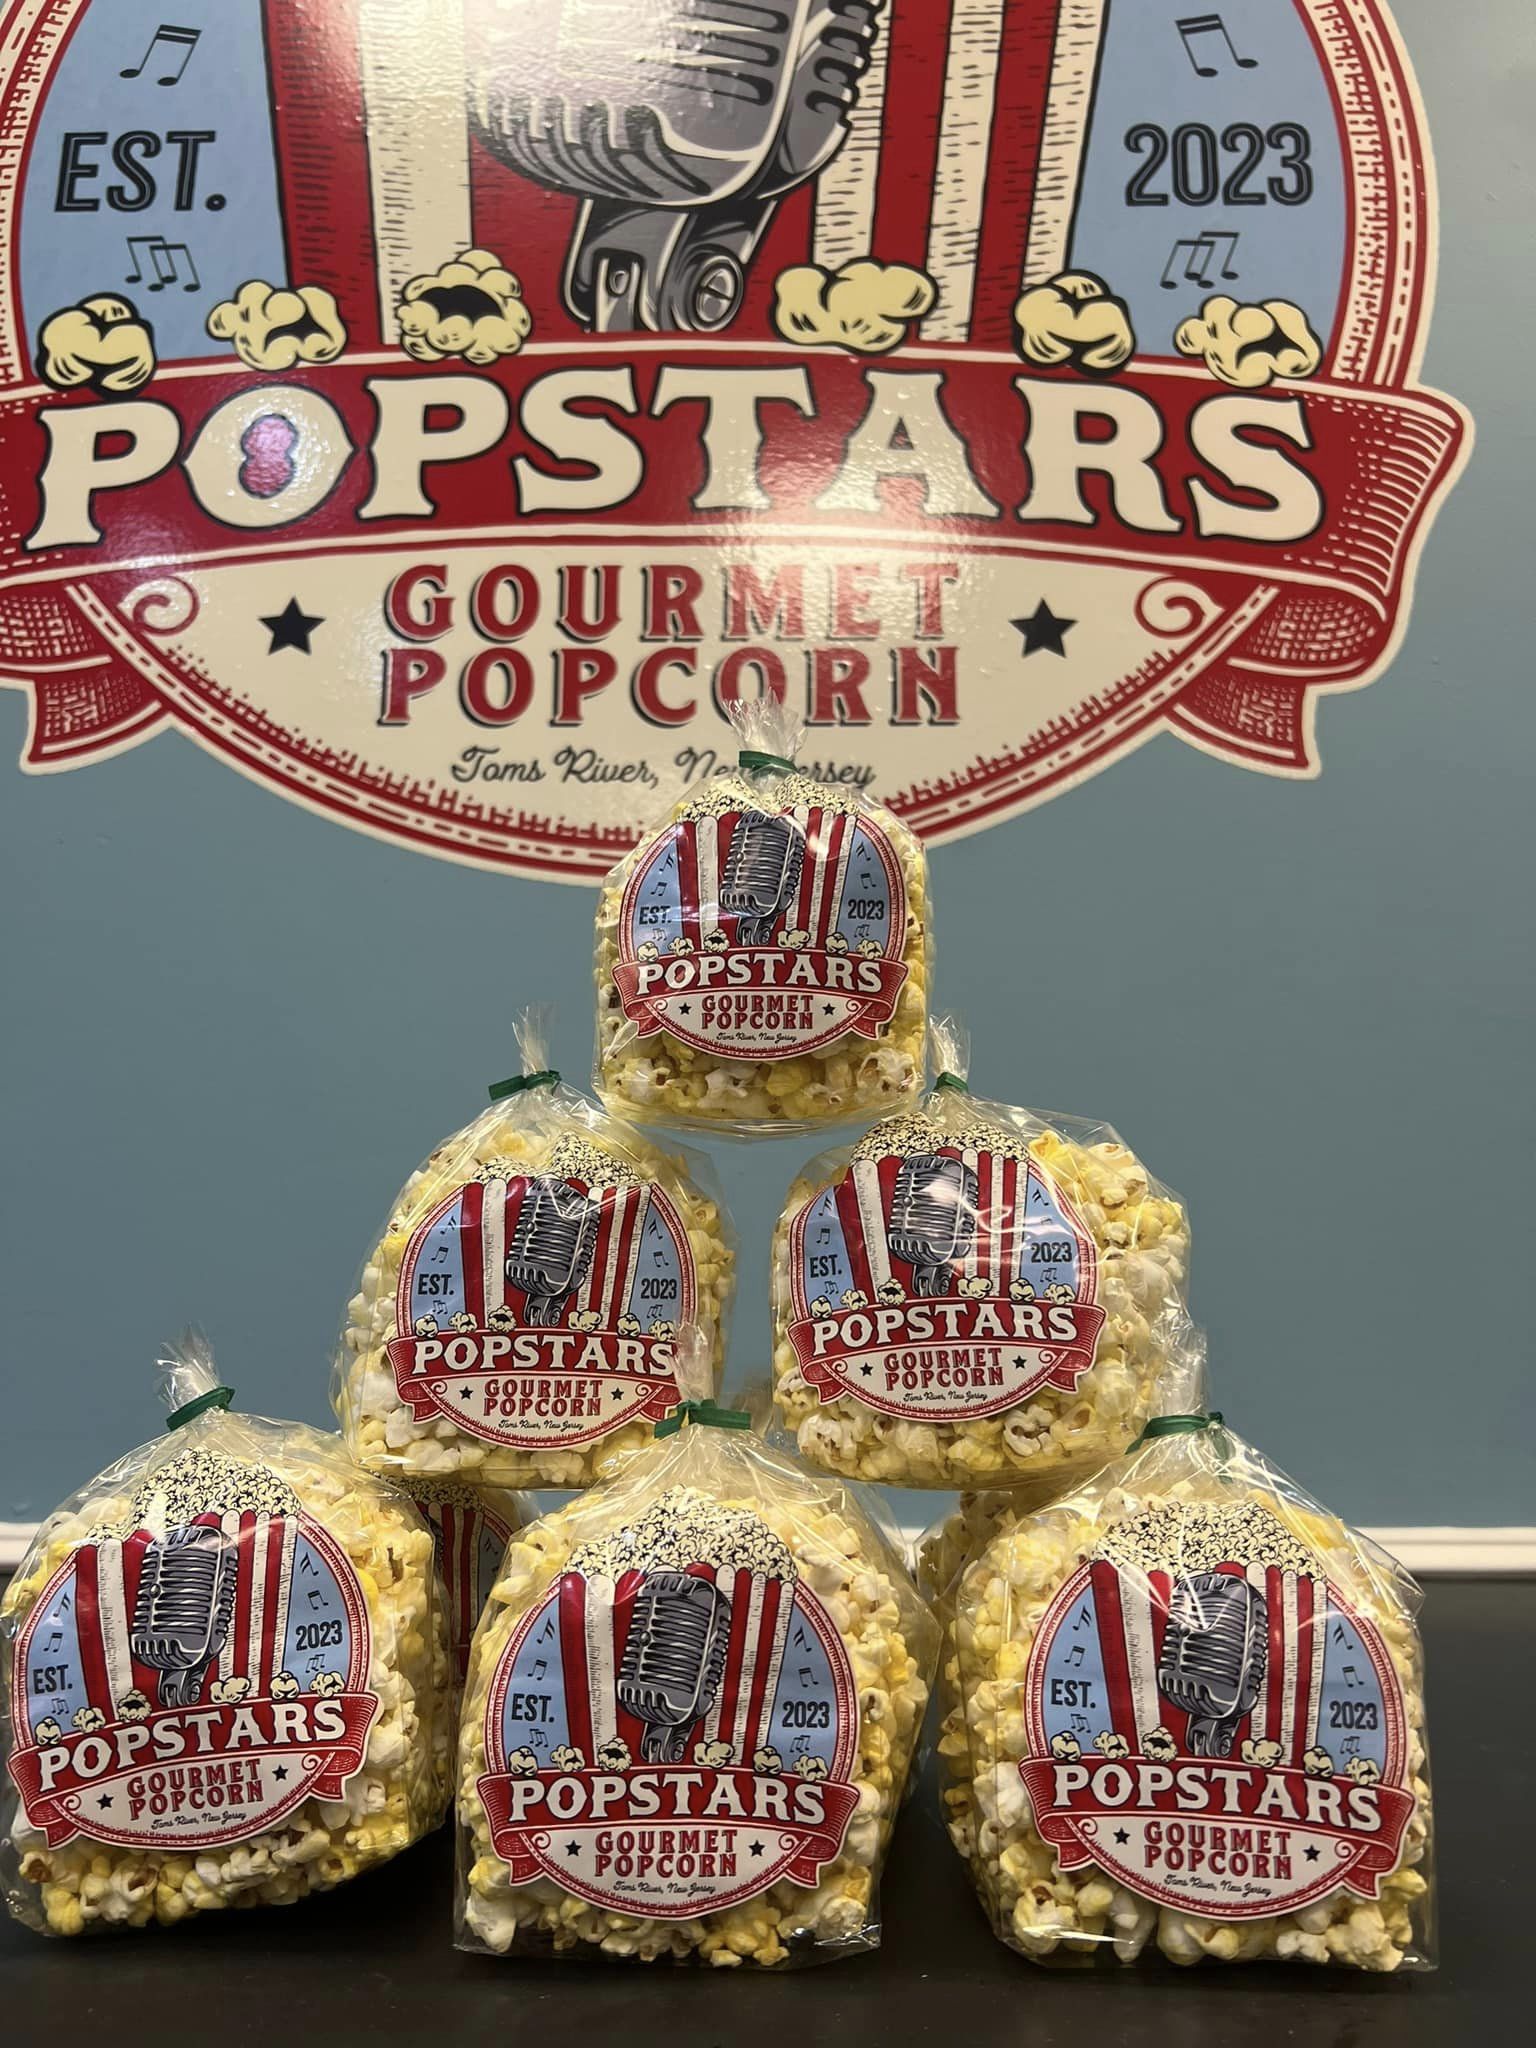 Popstars Gourmet Popcorn